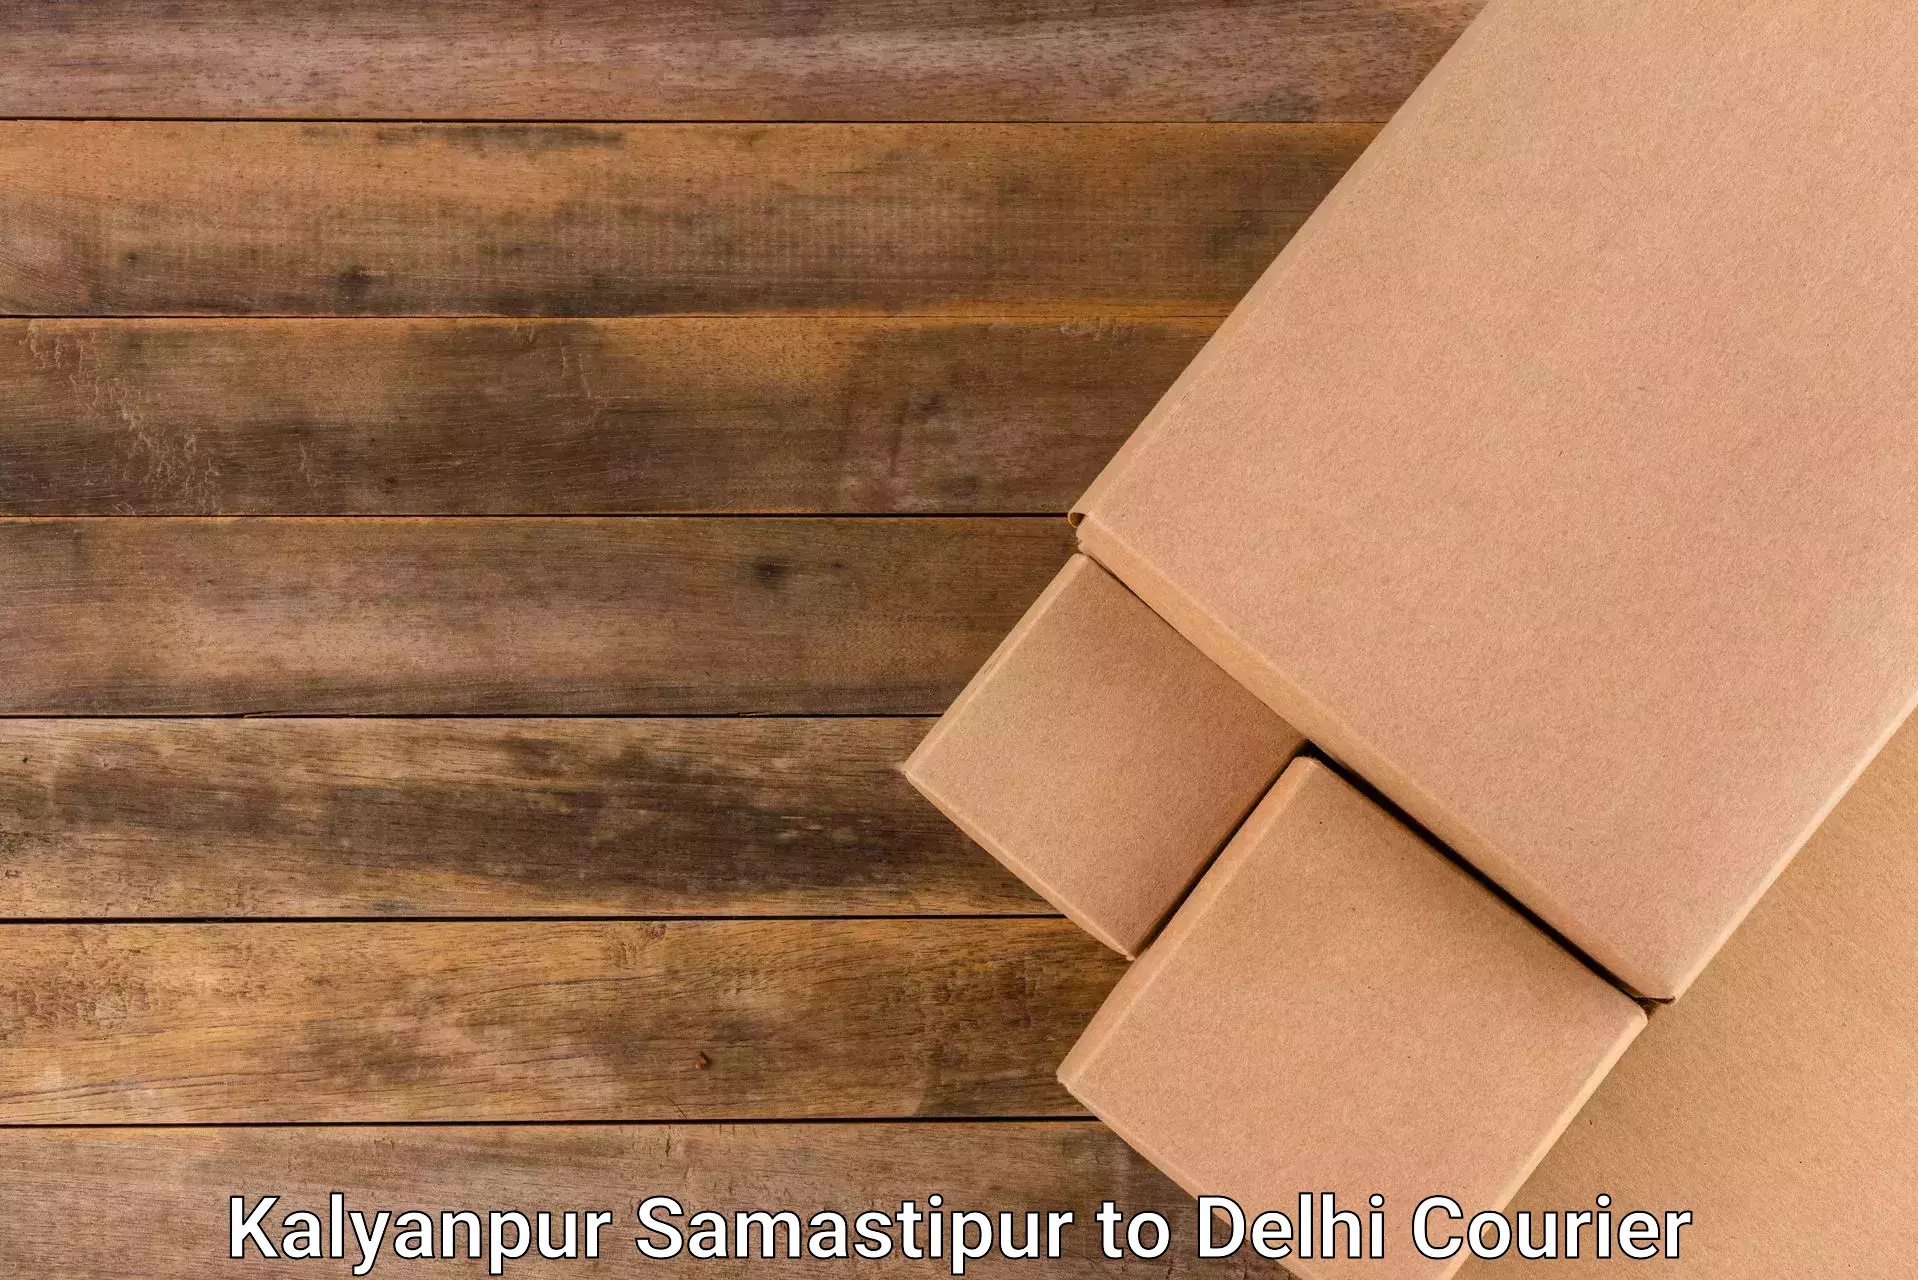 Next-generation courier services Kalyanpur Samastipur to NIT Delhi